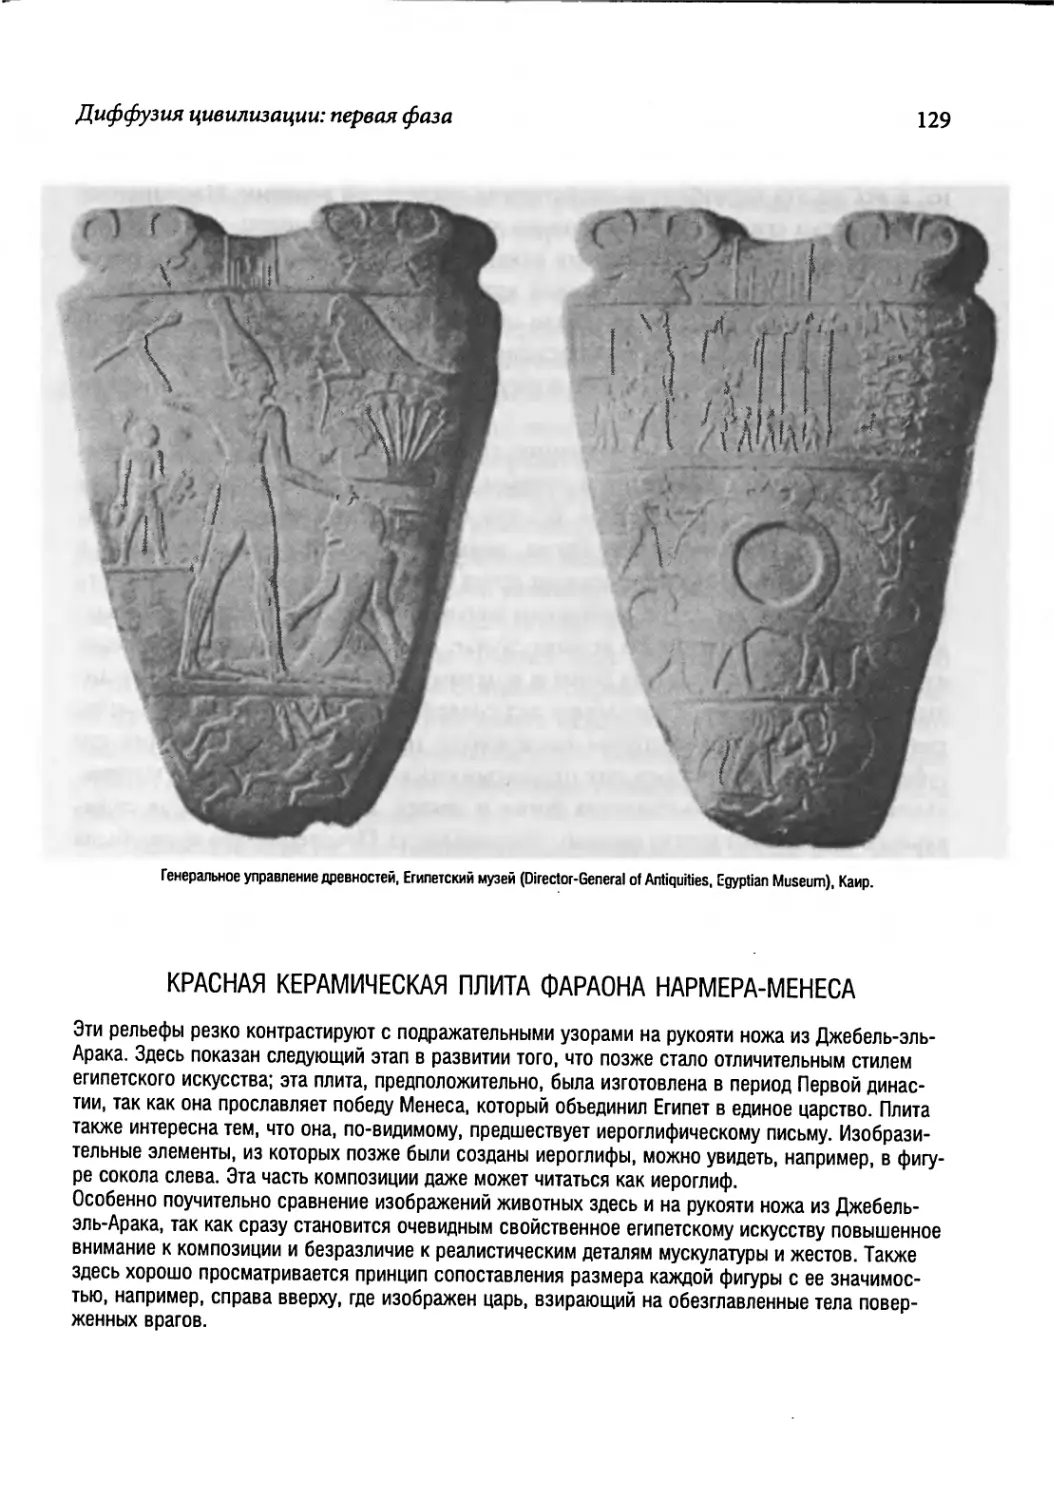 Красная керамическая плита фараона Нармера-Менеса [129]